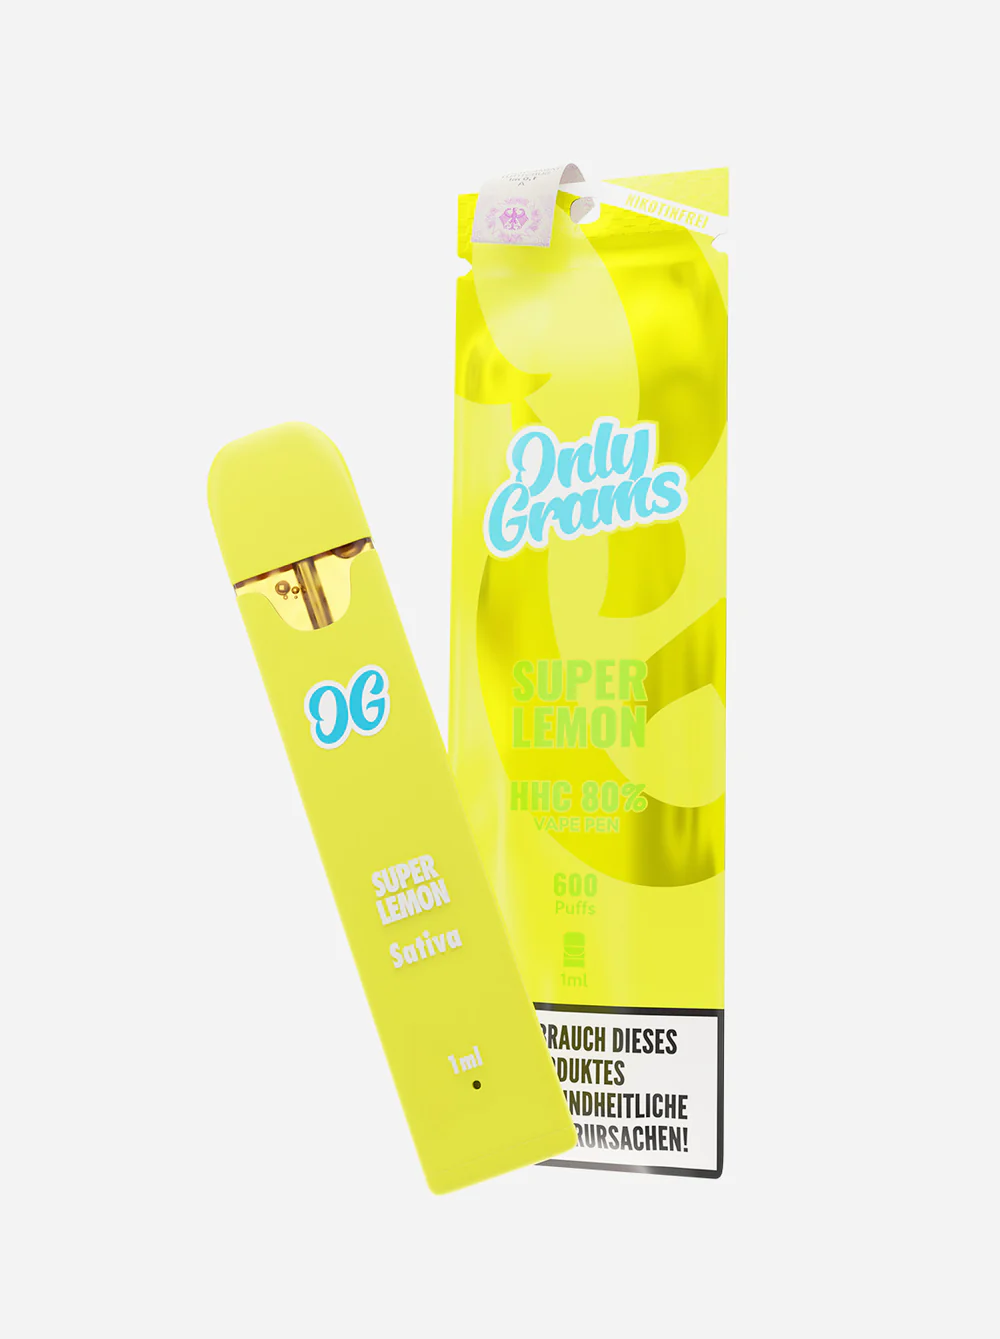 Only Grams - HHC Einweg E-Zigarette (600 Züge) - Super Lemon - 1ml